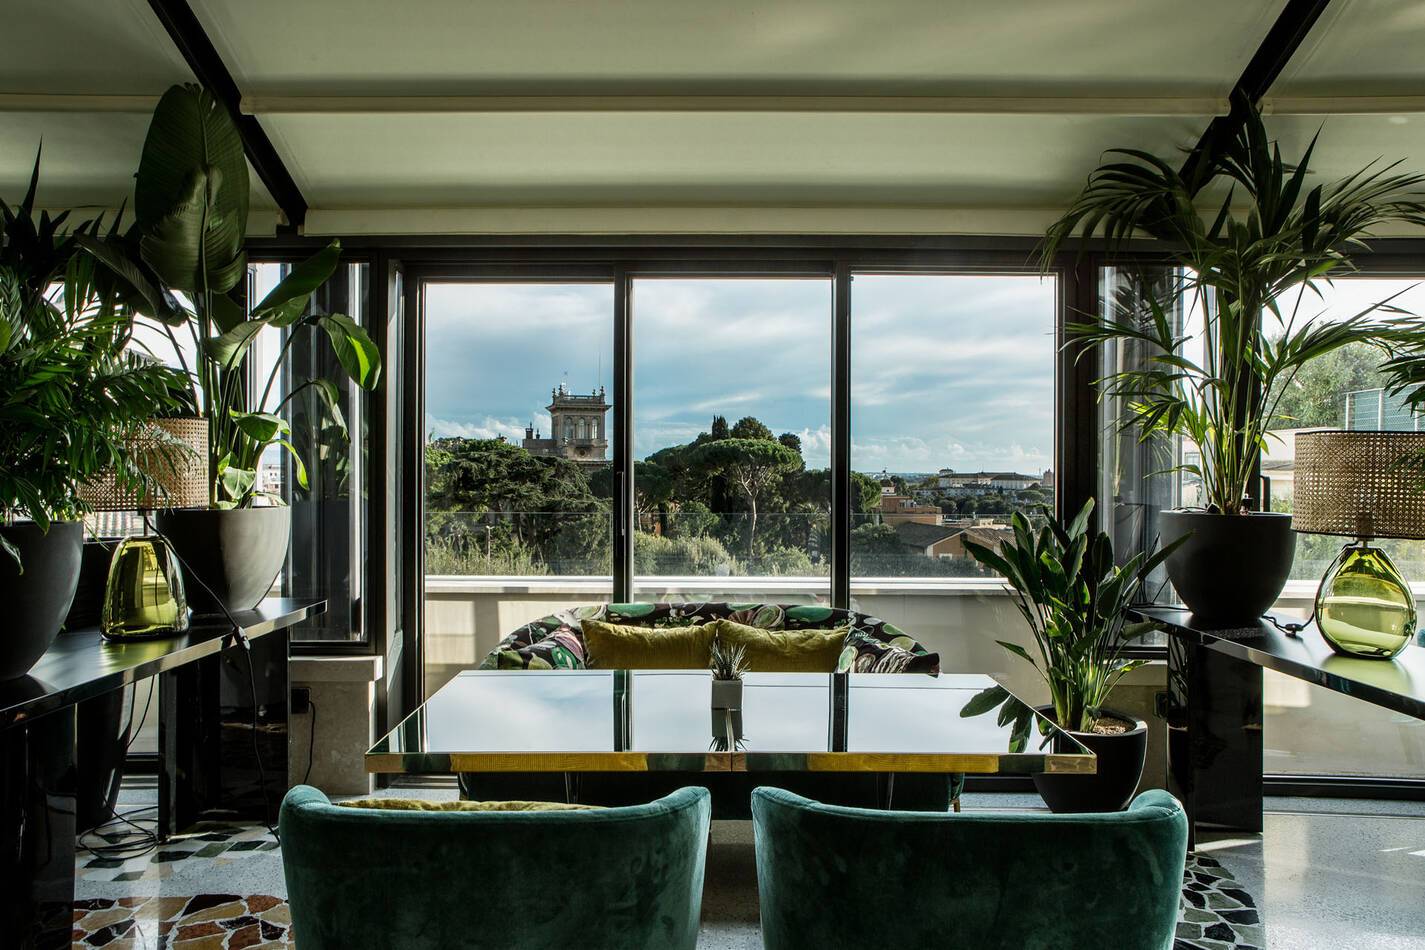 Sofitel Villa Borghese Rome Settimo Restaurant Vue